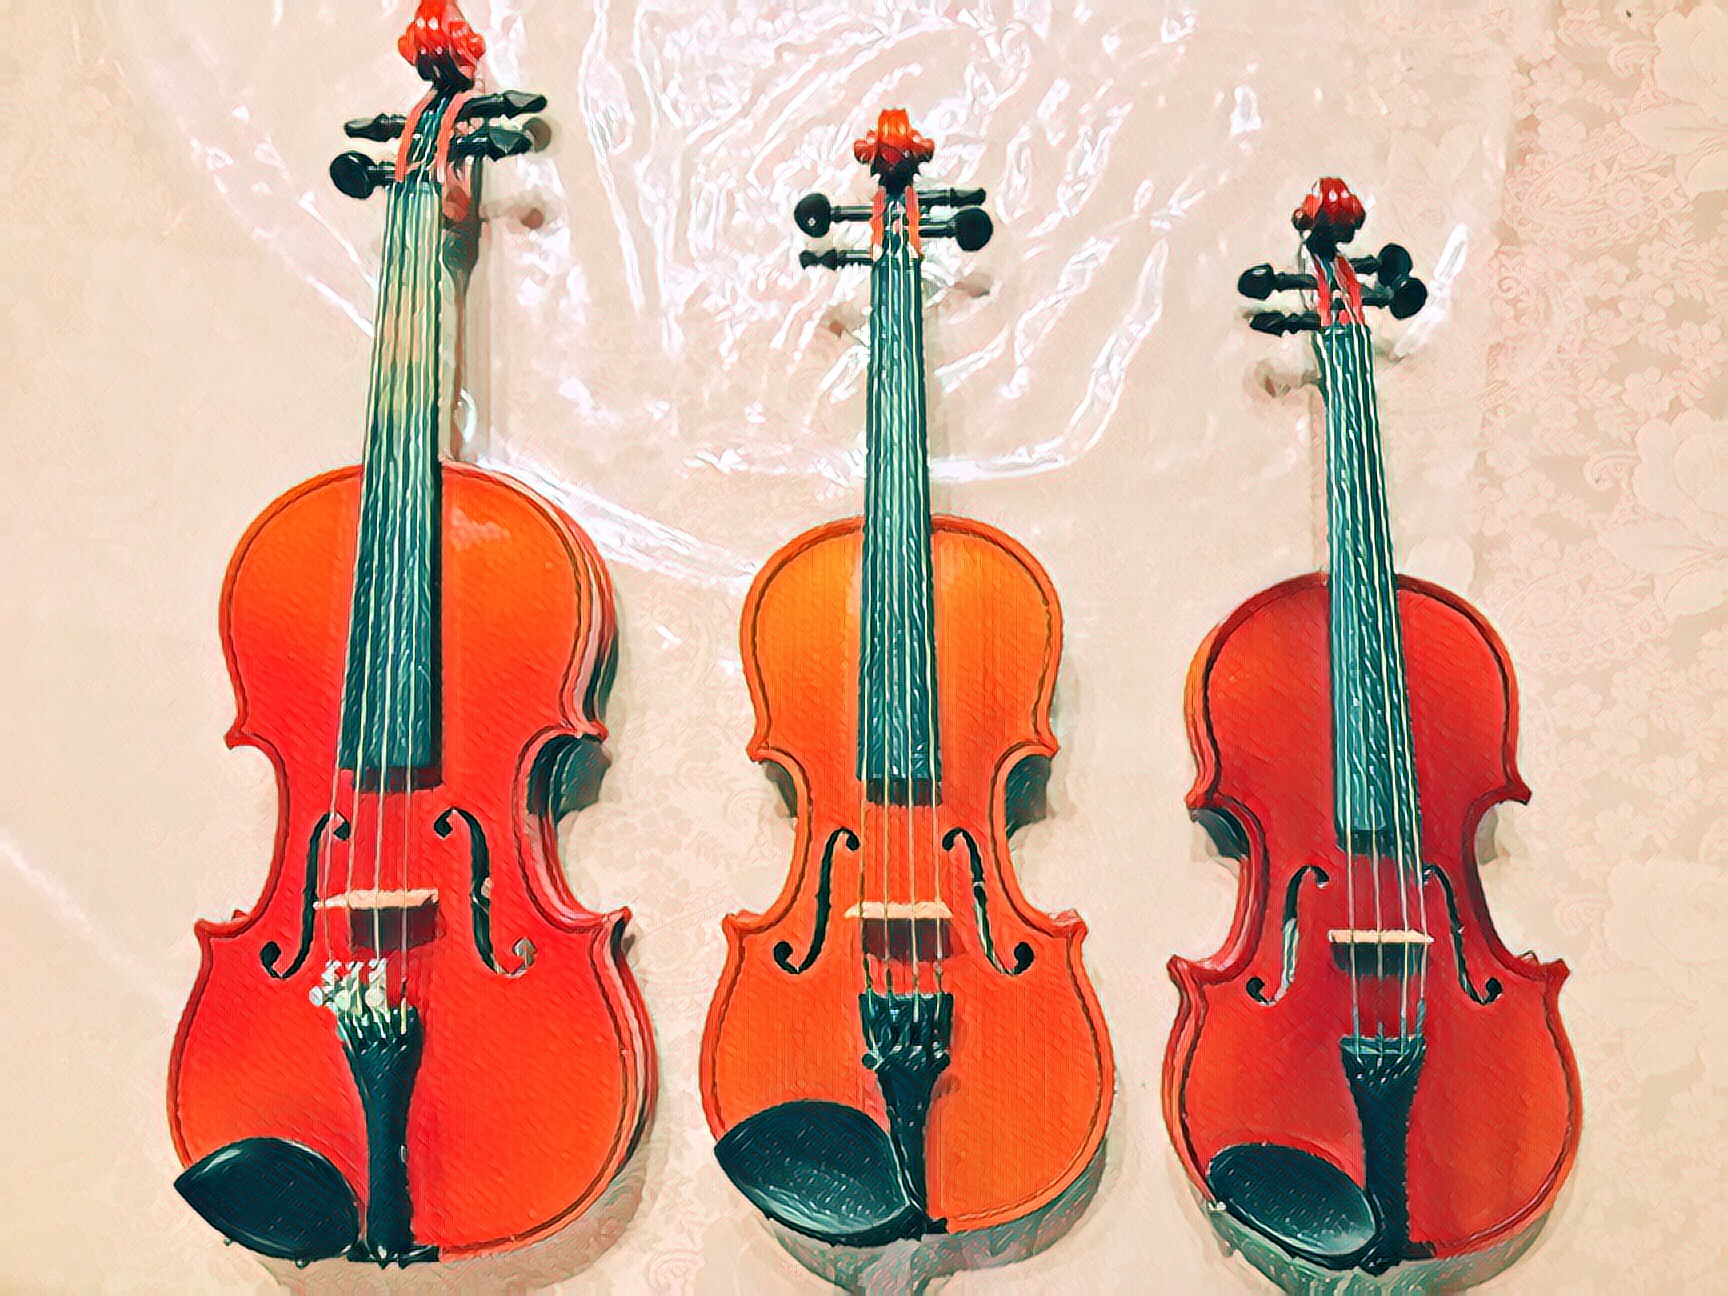 分数バイオリン購入記録(1/8サイズ) おすすめ楽器も | バスオさんの部屋